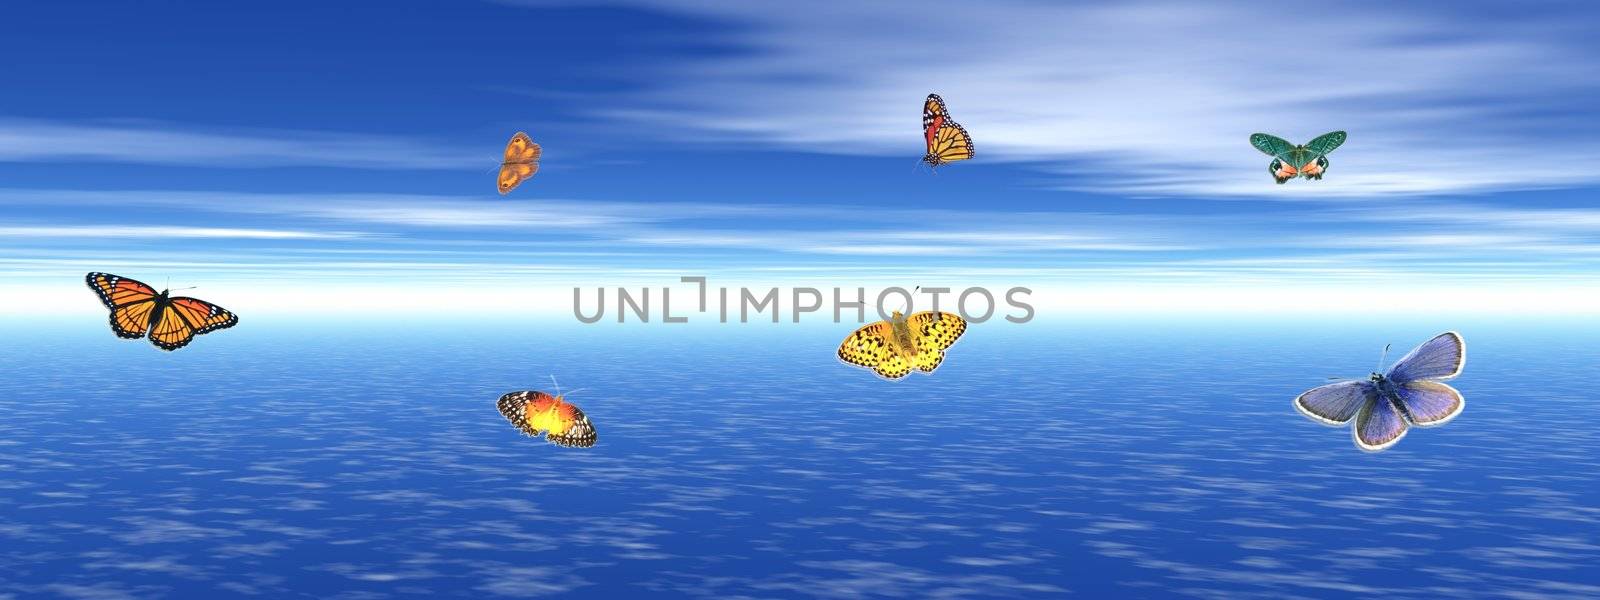 Butterflies and ocean by Elenaphotos21